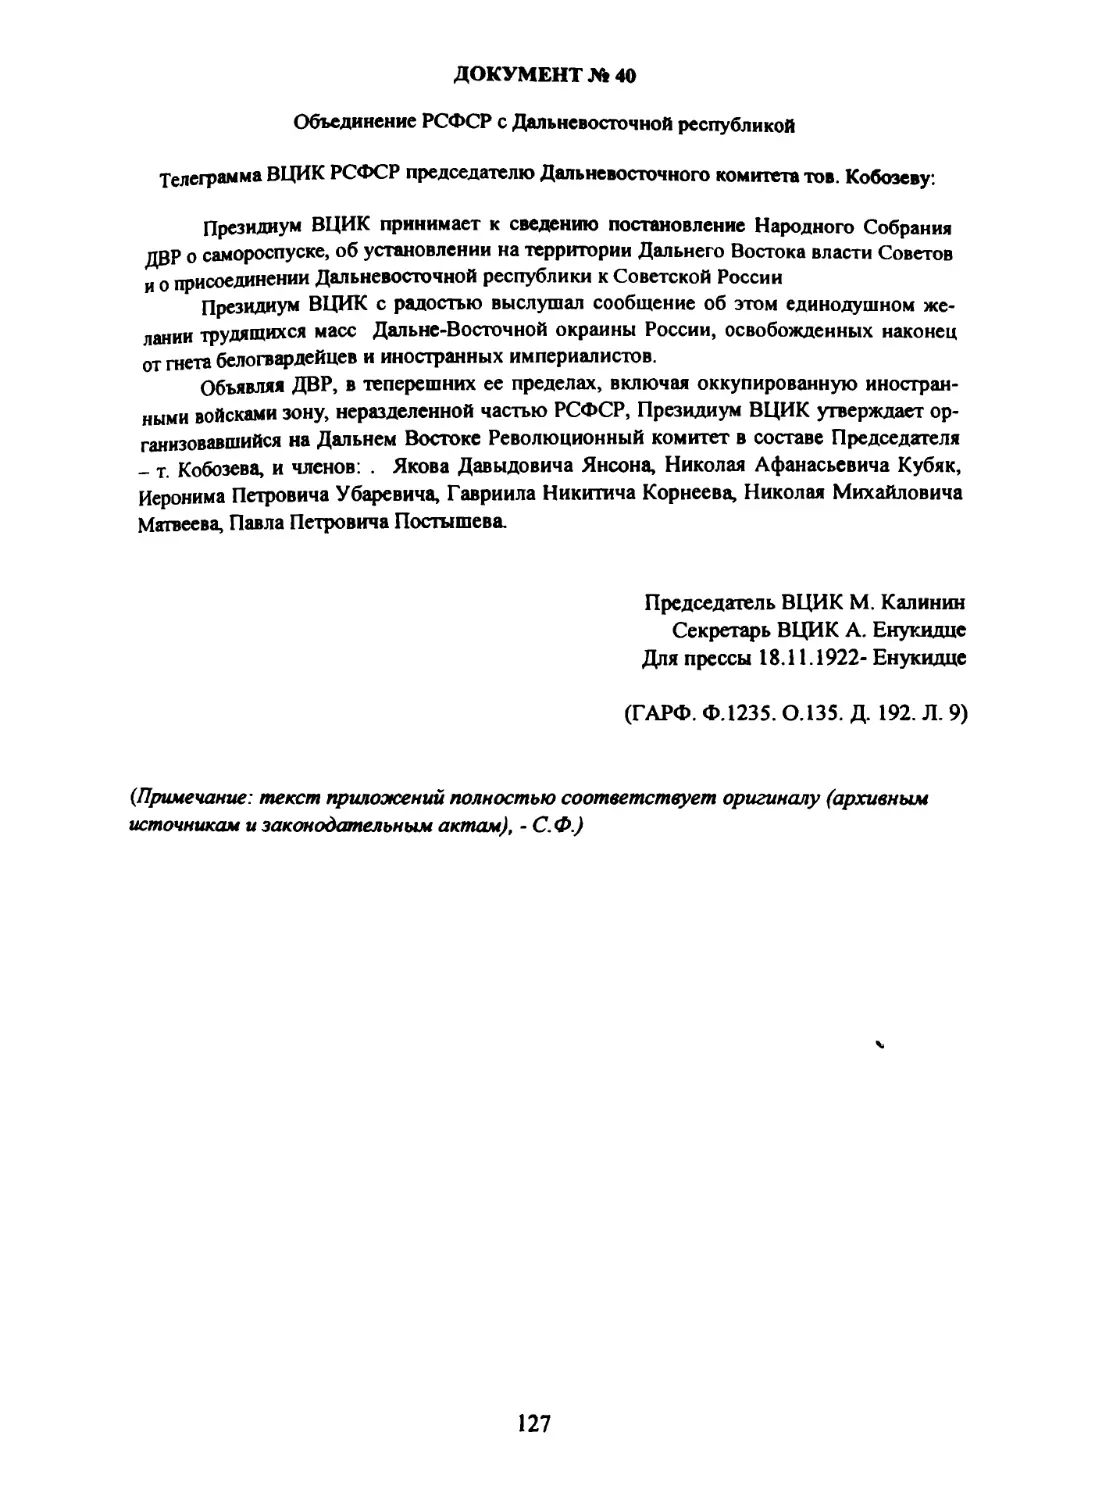 Документ № 40 Телеграмма ВЦИК РСФСР об объединении РСФСР с Дальневосточной республикой